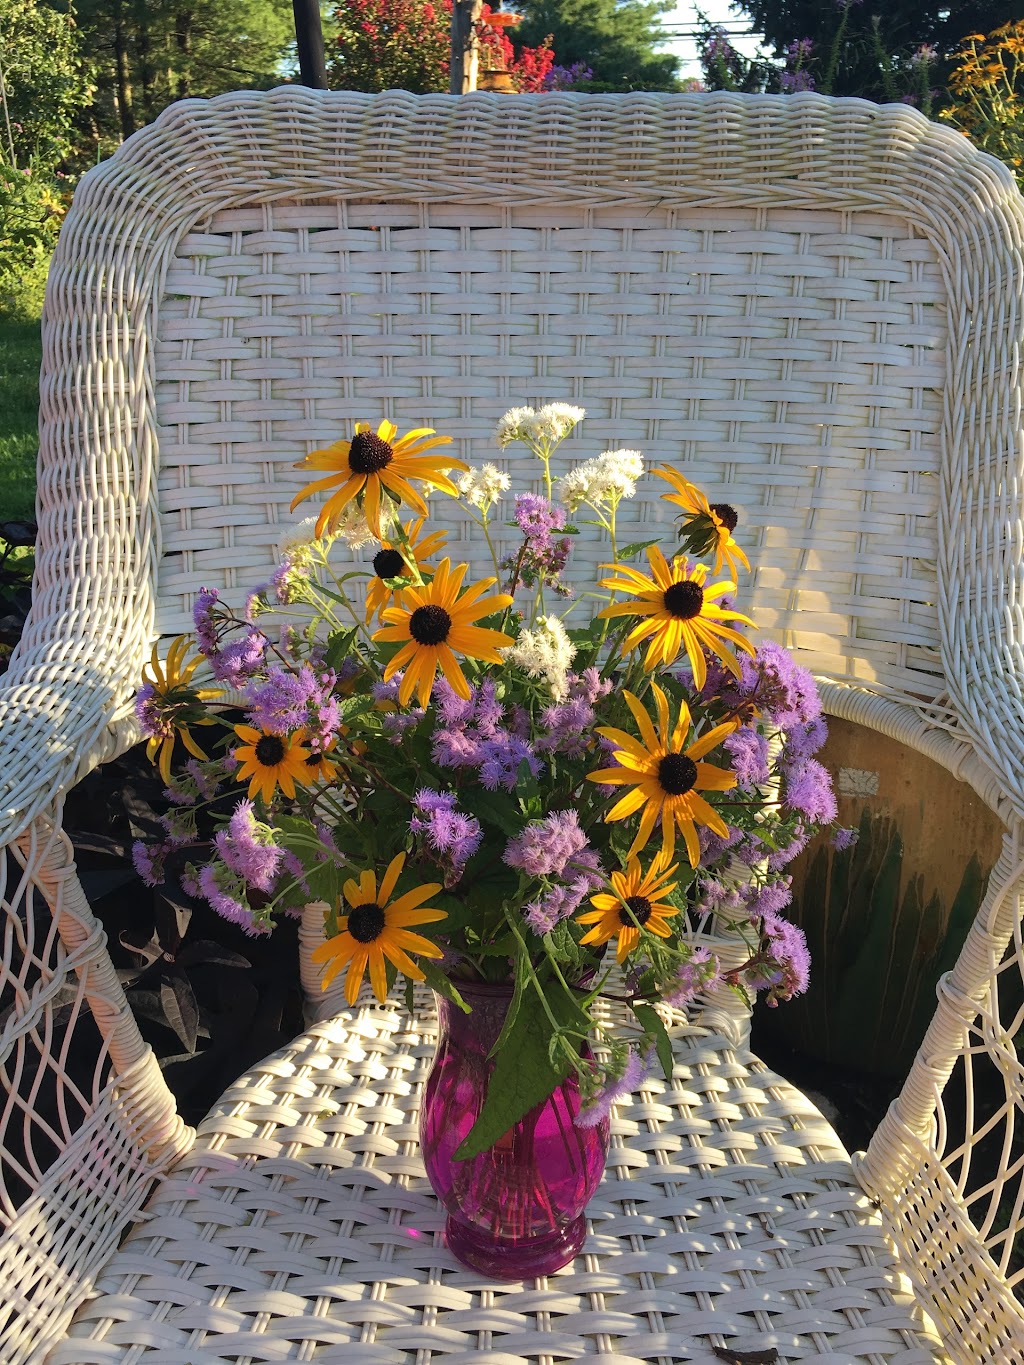 My Sisters Bloomin Garden seasonal cut flowers | 1408, 425 NJ-31, Ringoes, NJ 08551 | Phone: (609) 466-3110